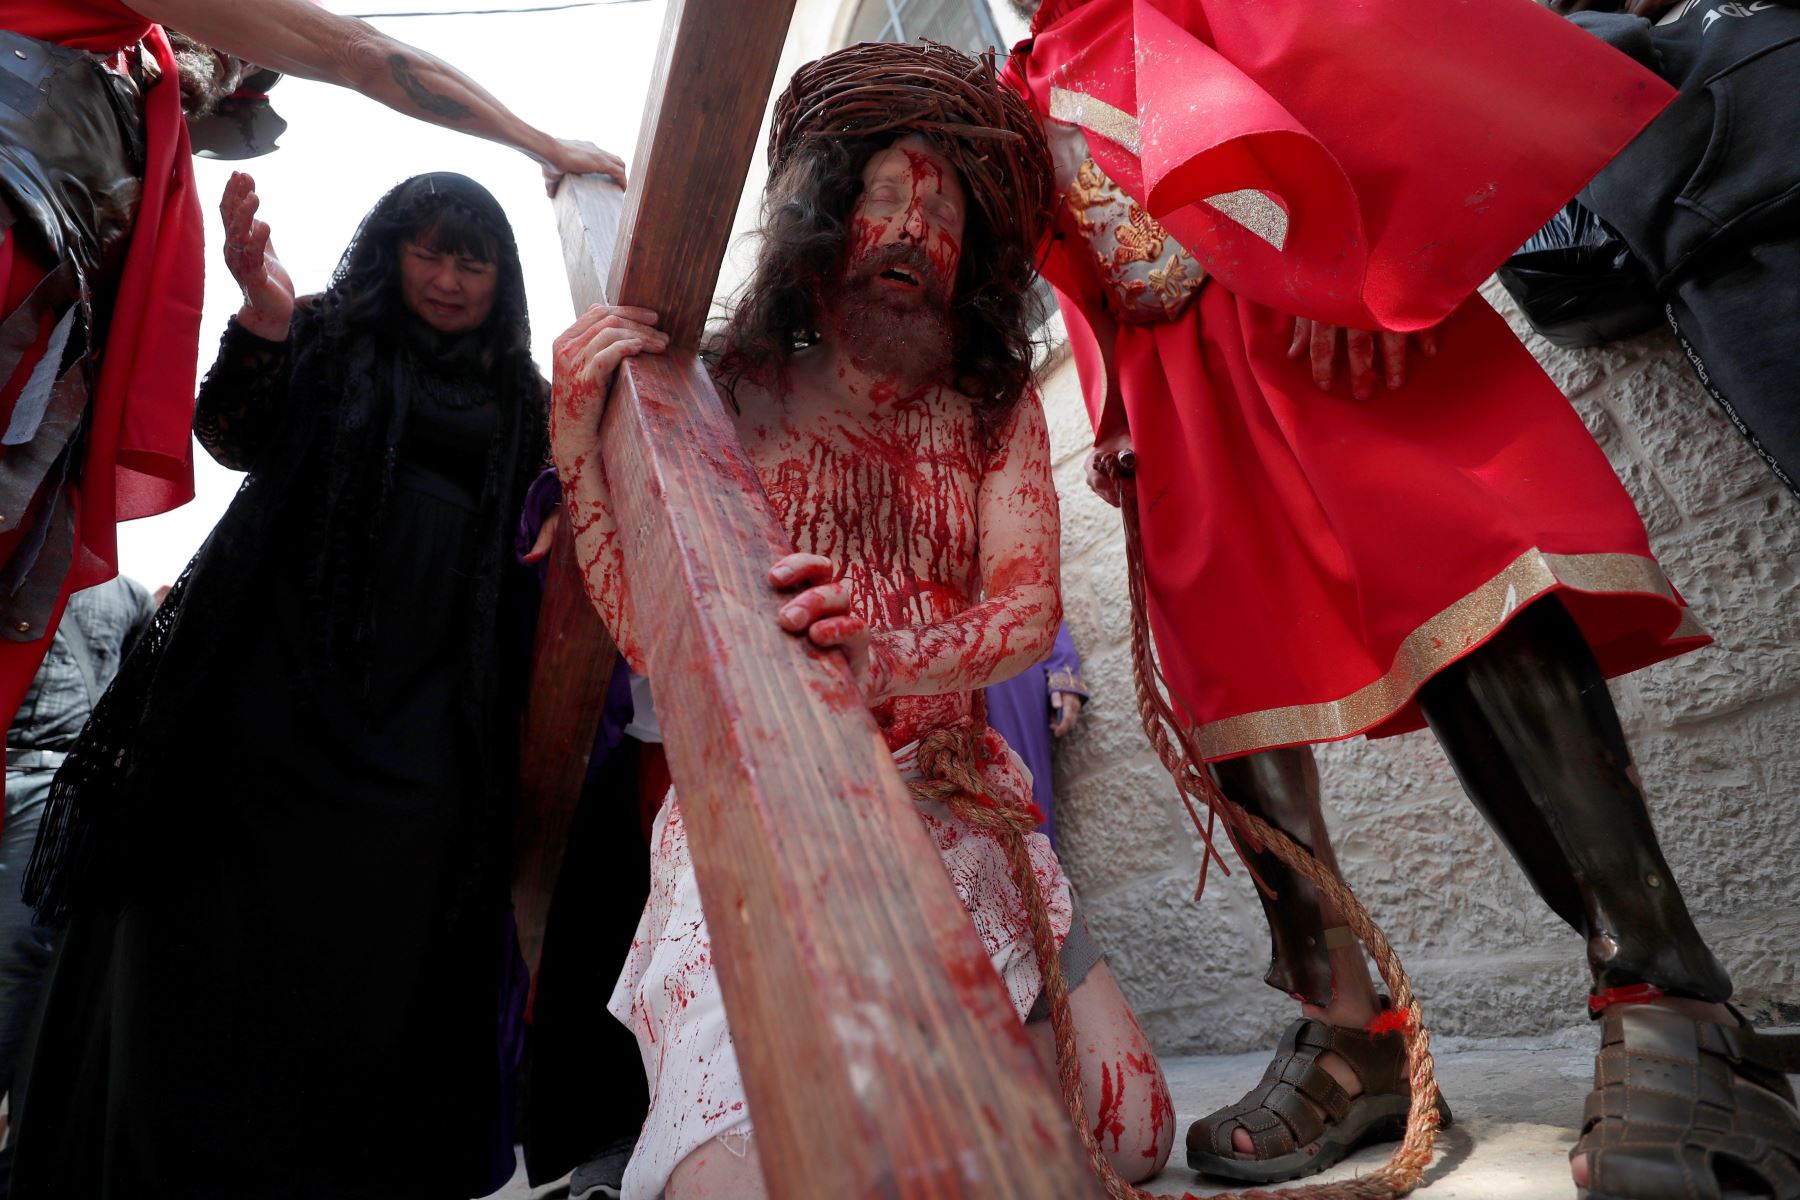 Un devoto representa el vía crucis de Jesús durante la procesión por el Viernes Santo en Jerusalén, Israel. EFE/ Atef Safadi

Foto: EFE